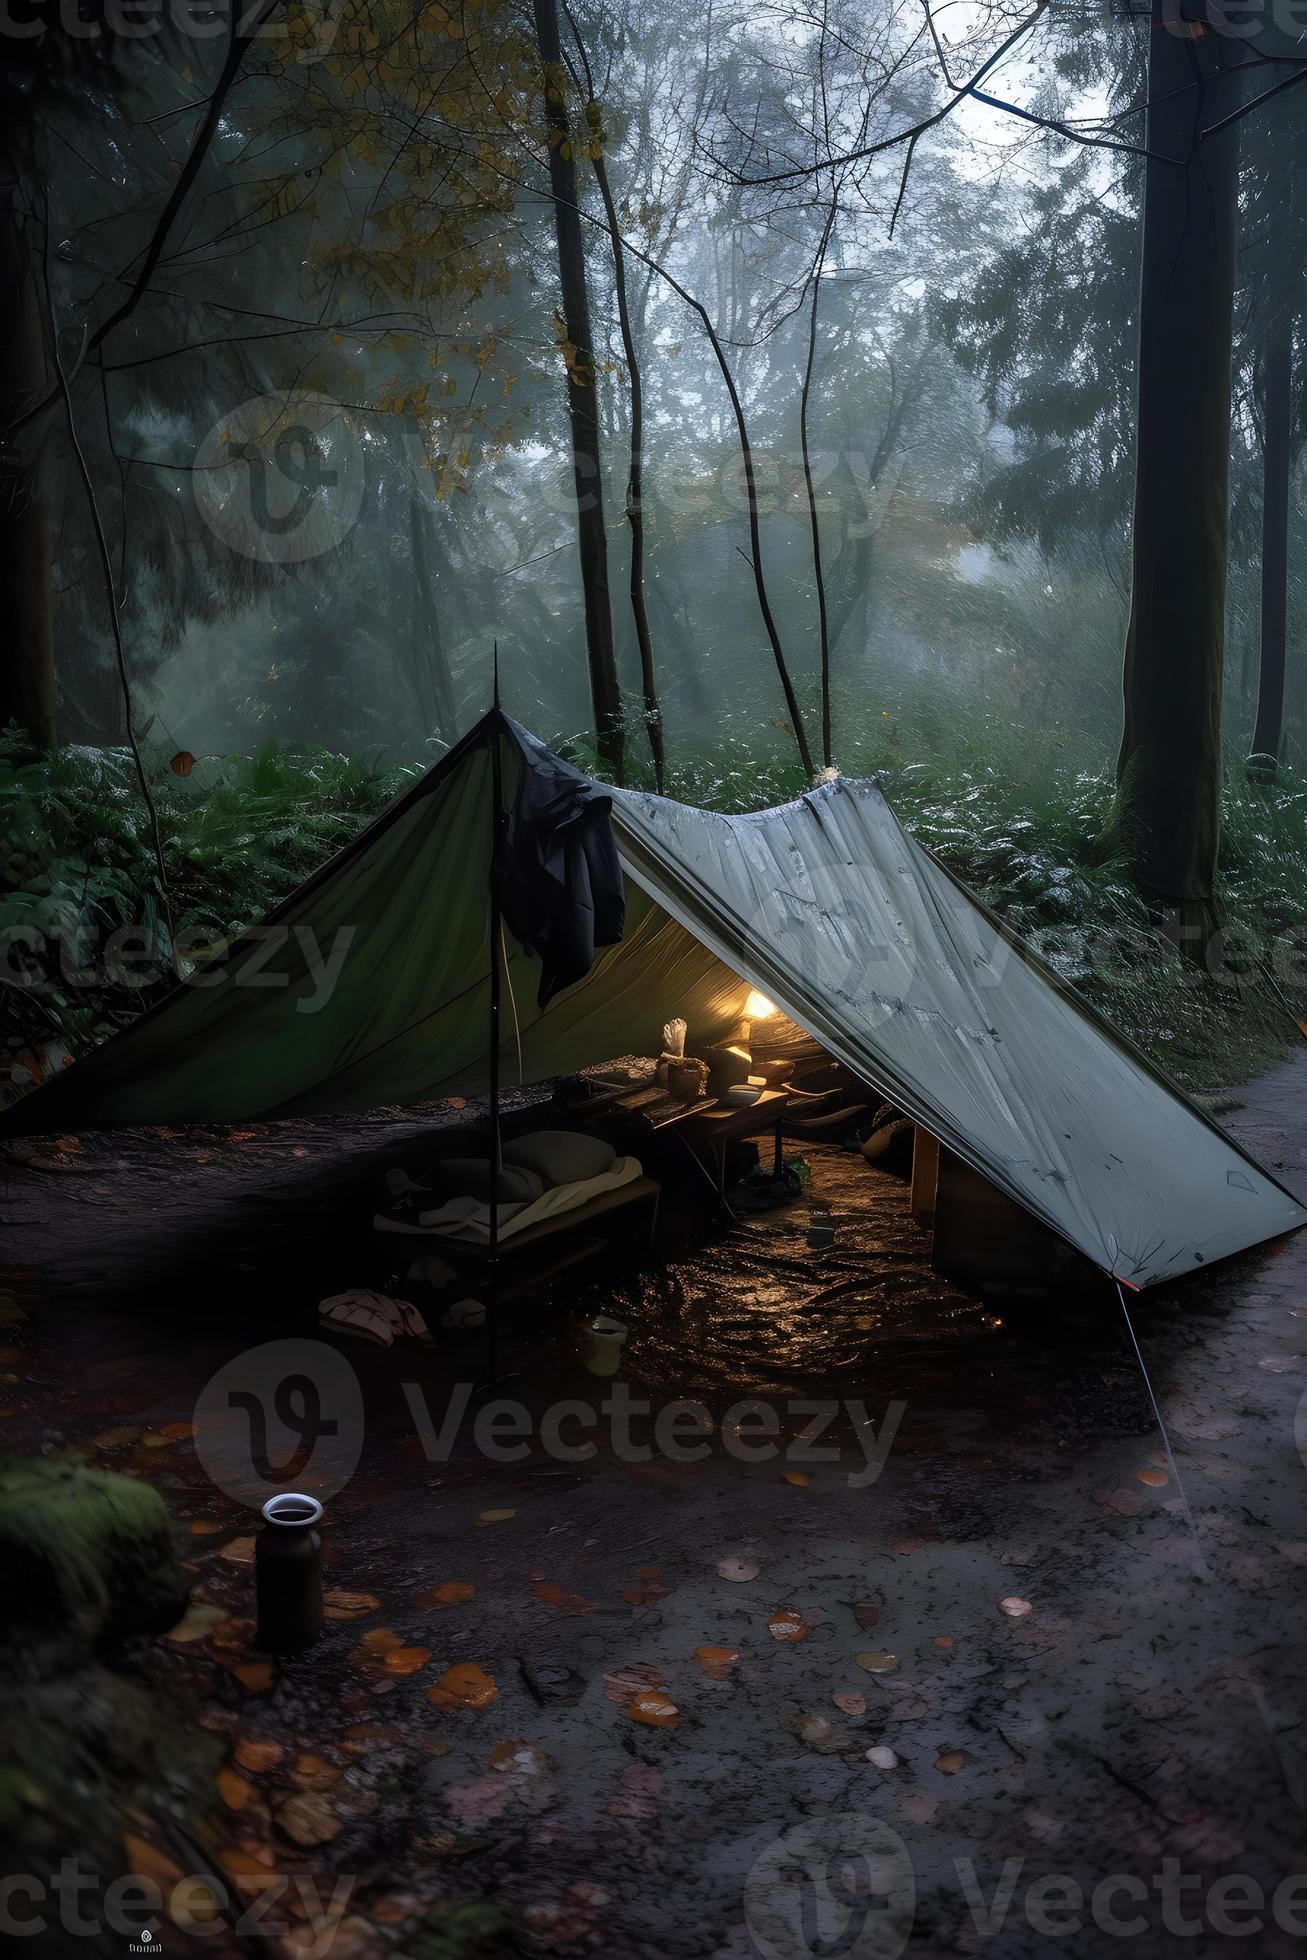 Settlers Hurtig Uoverensstemmelse vildmark överlevnad. bushcraft tält under de presenning i tung regn,  fattande de kyla av gryning. en scen av uthållighet och elasticitet  22210568 Arkivfoto på Vecteezy